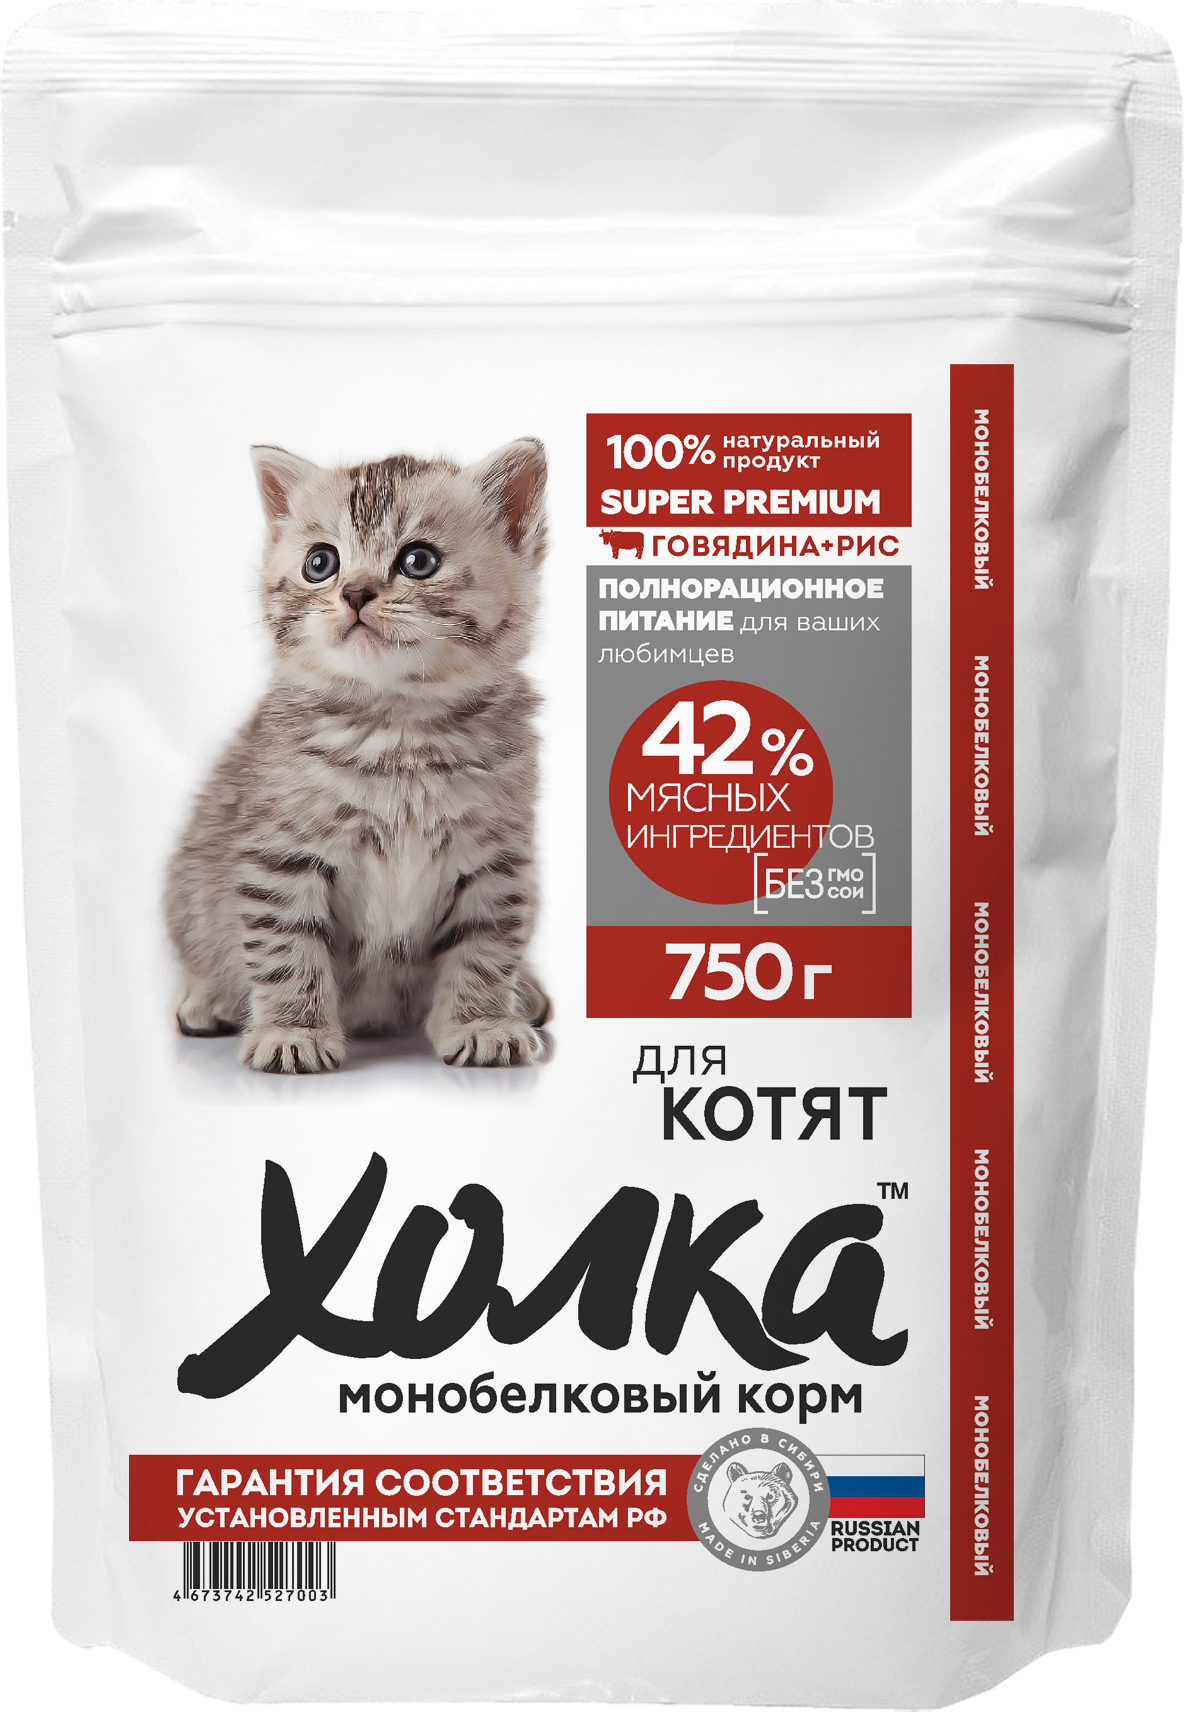 Полнорационный сухой корм Холка для котят из говядины и риса, 0.75 кг - фотография № 1